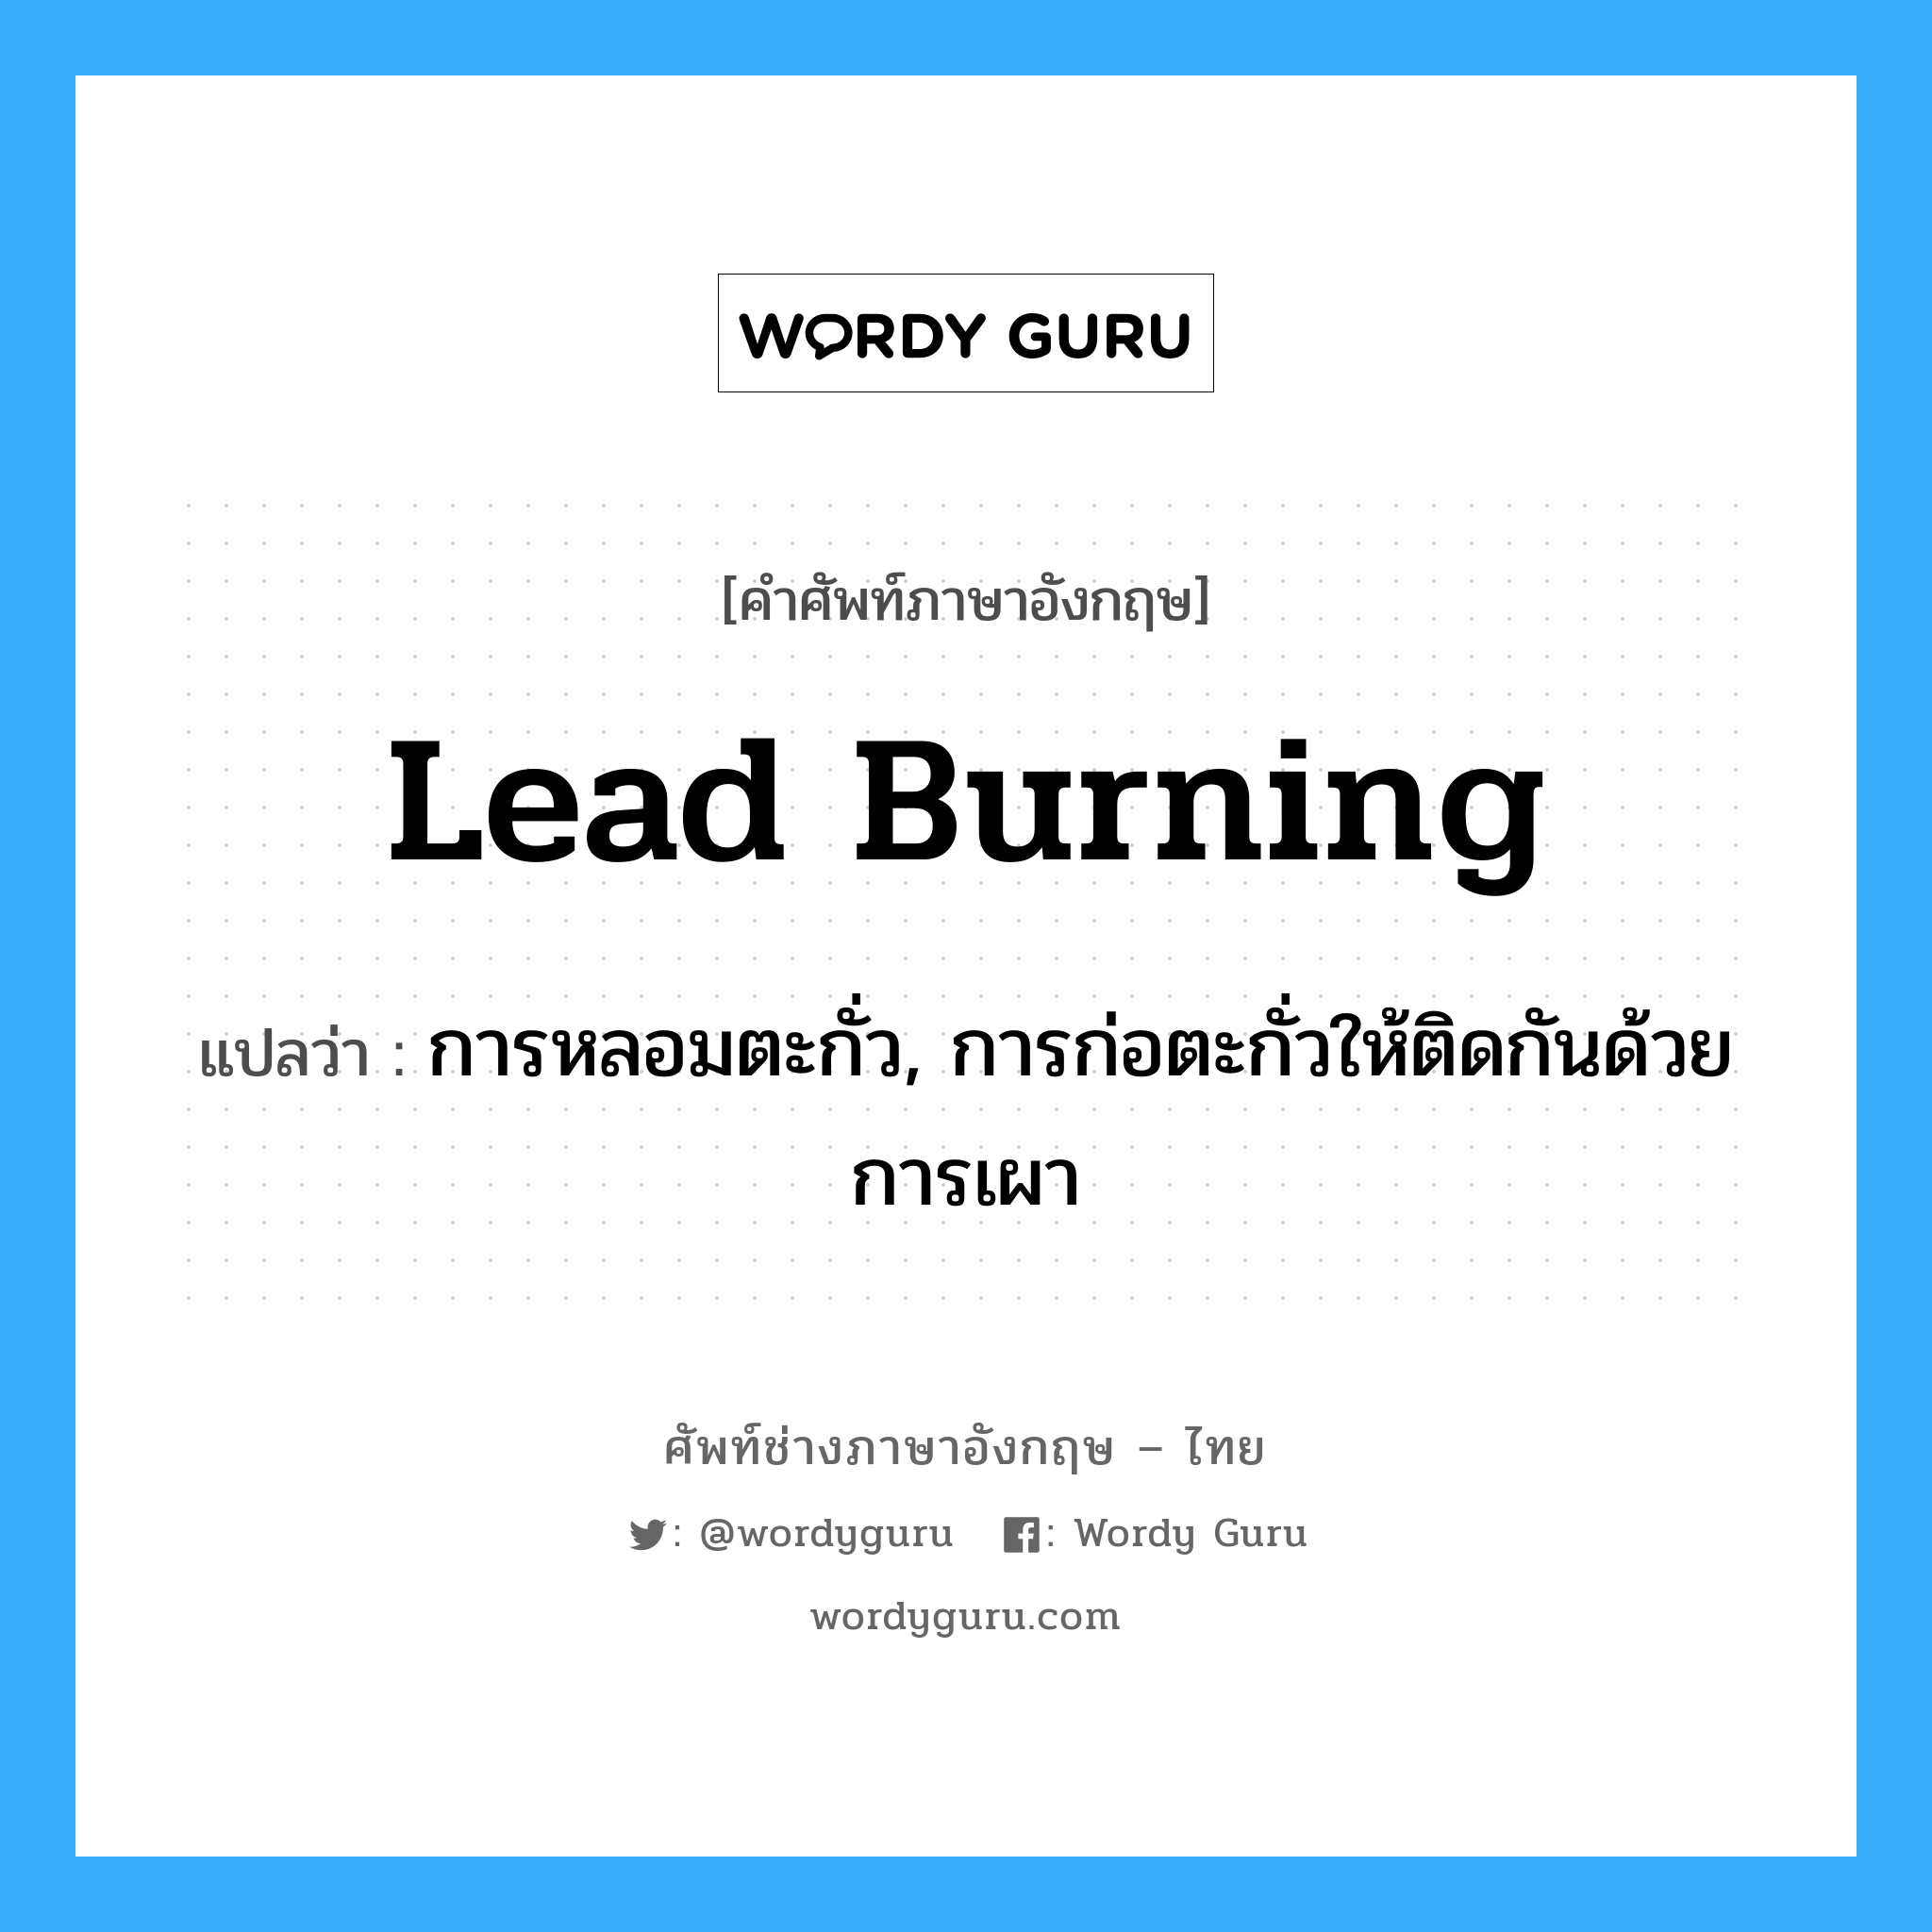 lead burning แปลว่า?, คำศัพท์ช่างภาษาอังกฤษ - ไทย lead burning คำศัพท์ภาษาอังกฤษ lead burning แปลว่า การหลอมตะกั่ว, การก่อตะกั่วให้ติดกันด้วยการเผา